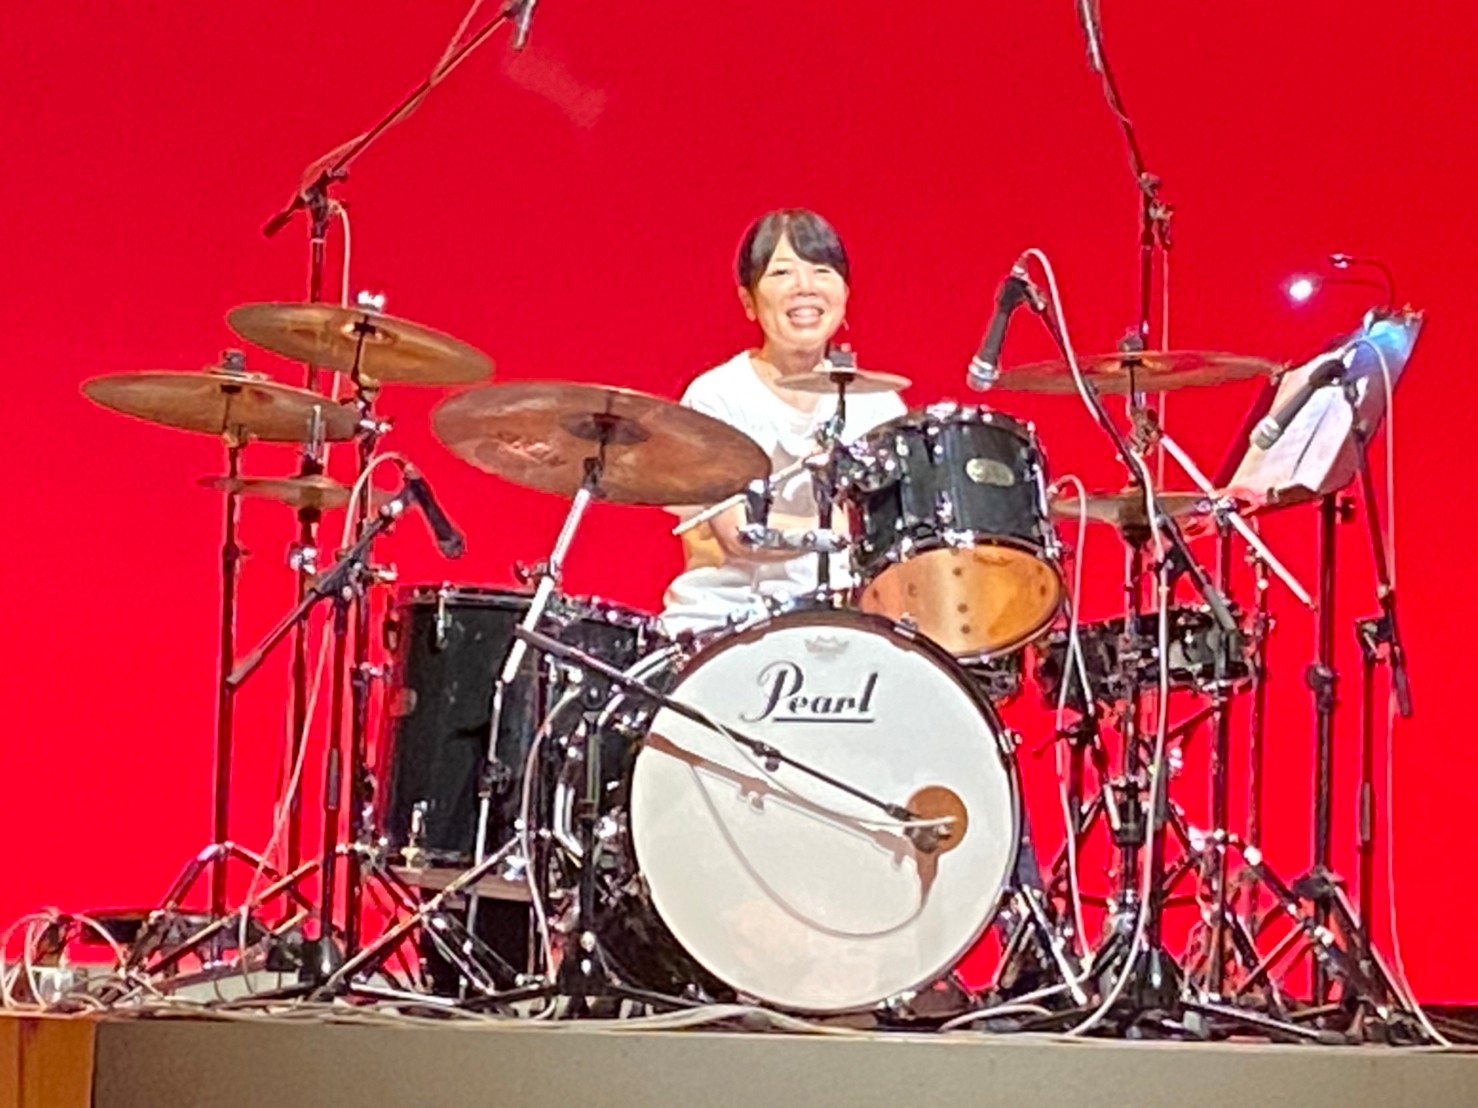 小堺ドラム教室